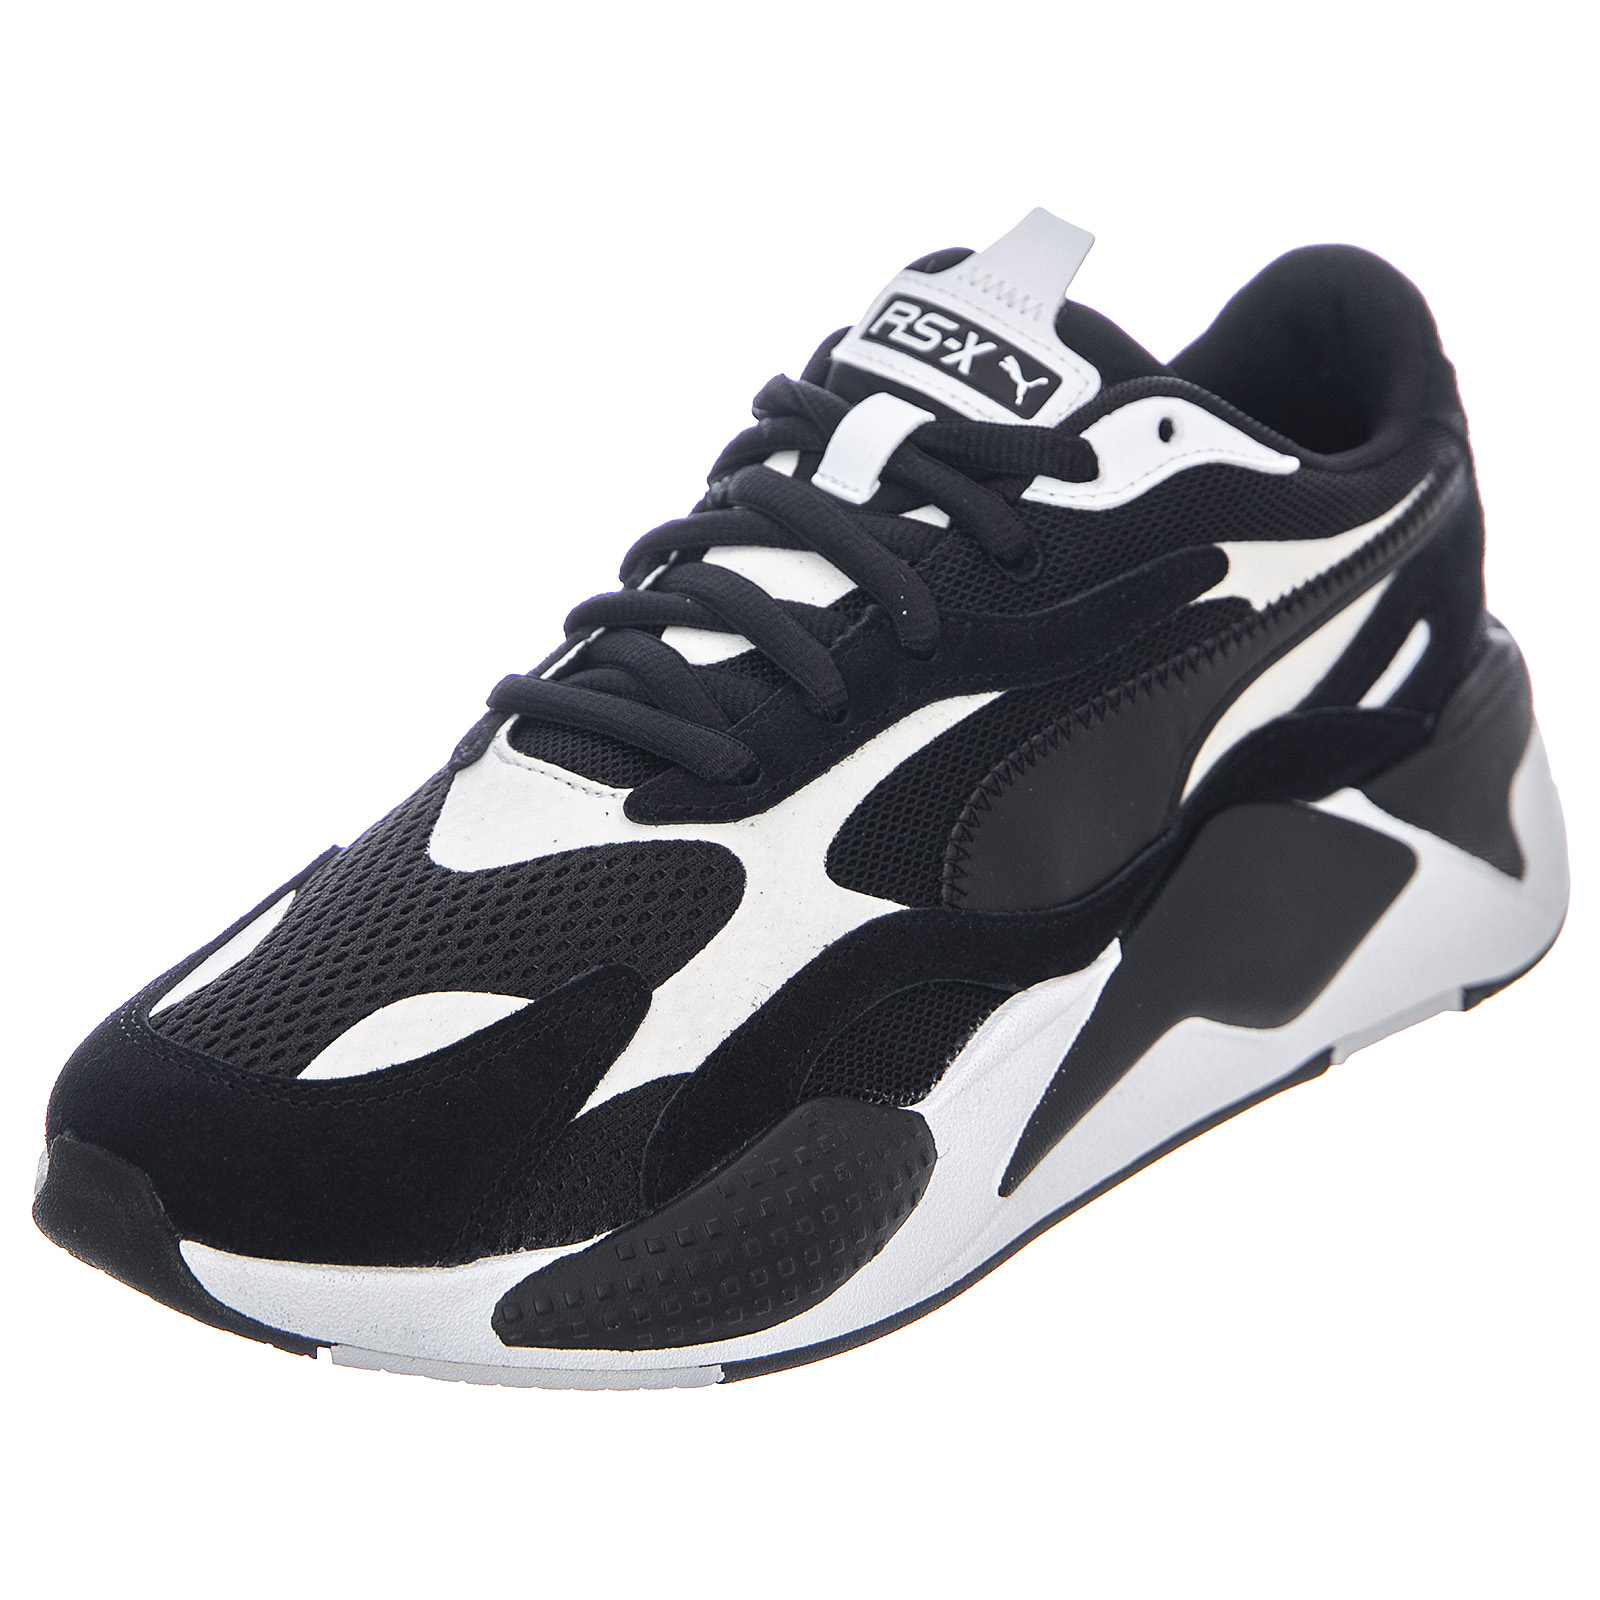 Puma super rs-x3 - black / puma - scarpe basse uomo nere / bianche  multicolor | eBay